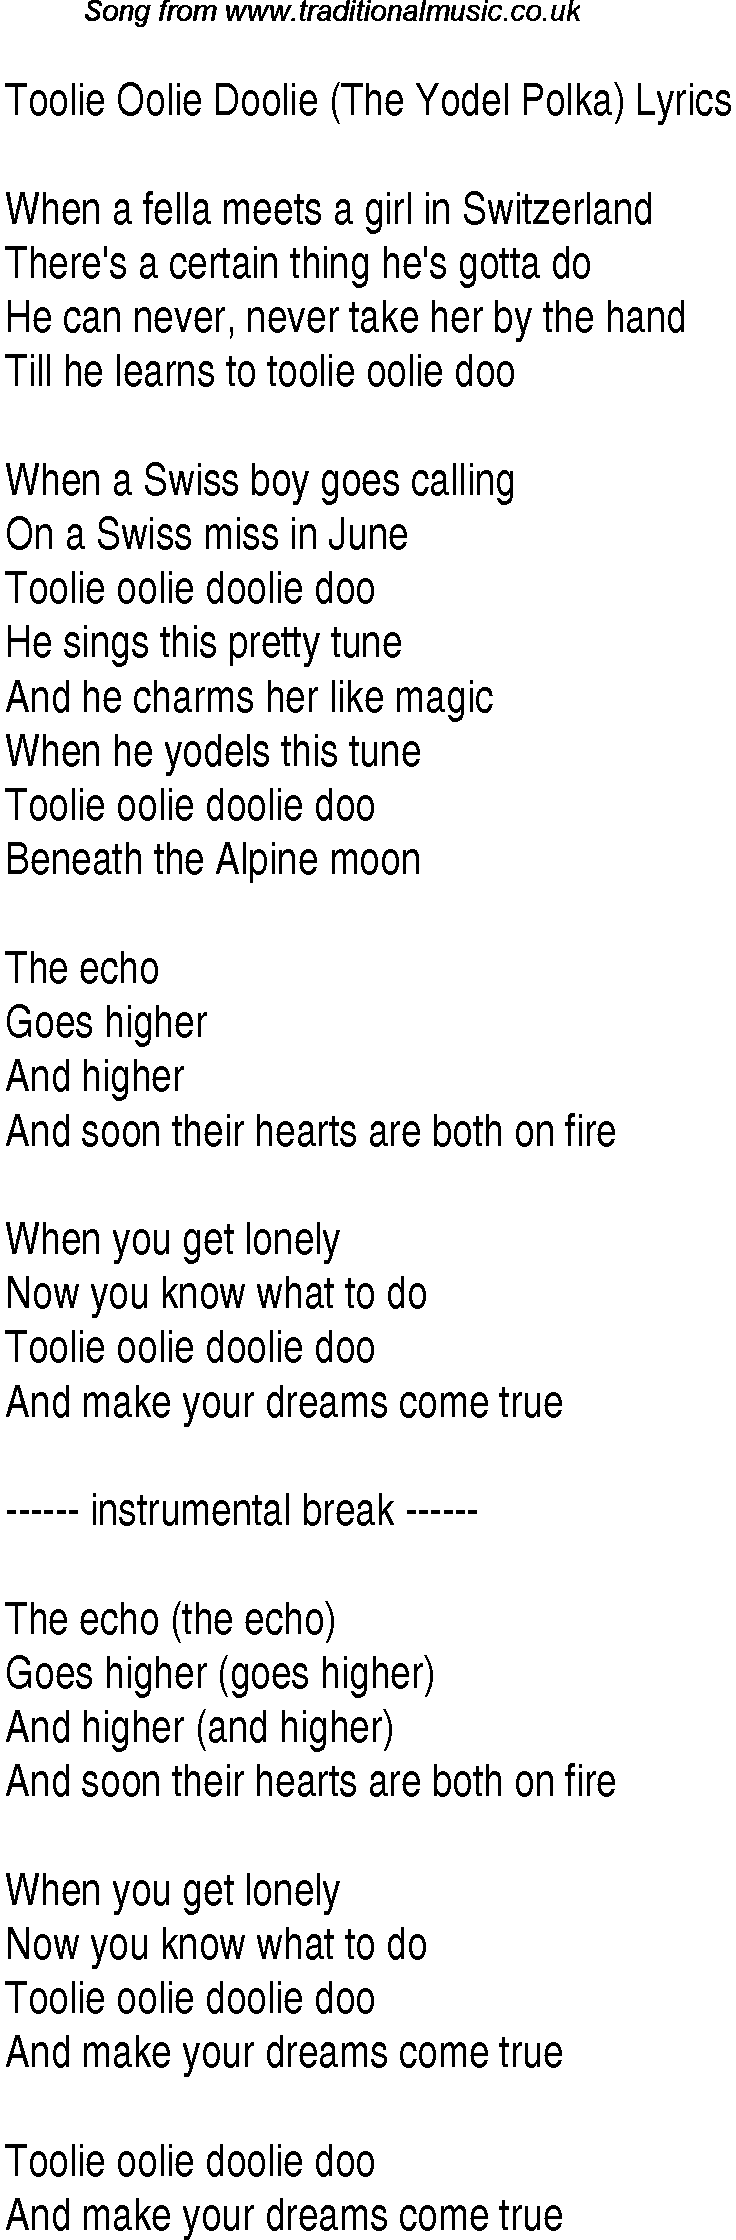 1940s top songs - lyrics for Toolie Oolie Doolie The Yodel Polka(Andrews Sisters)